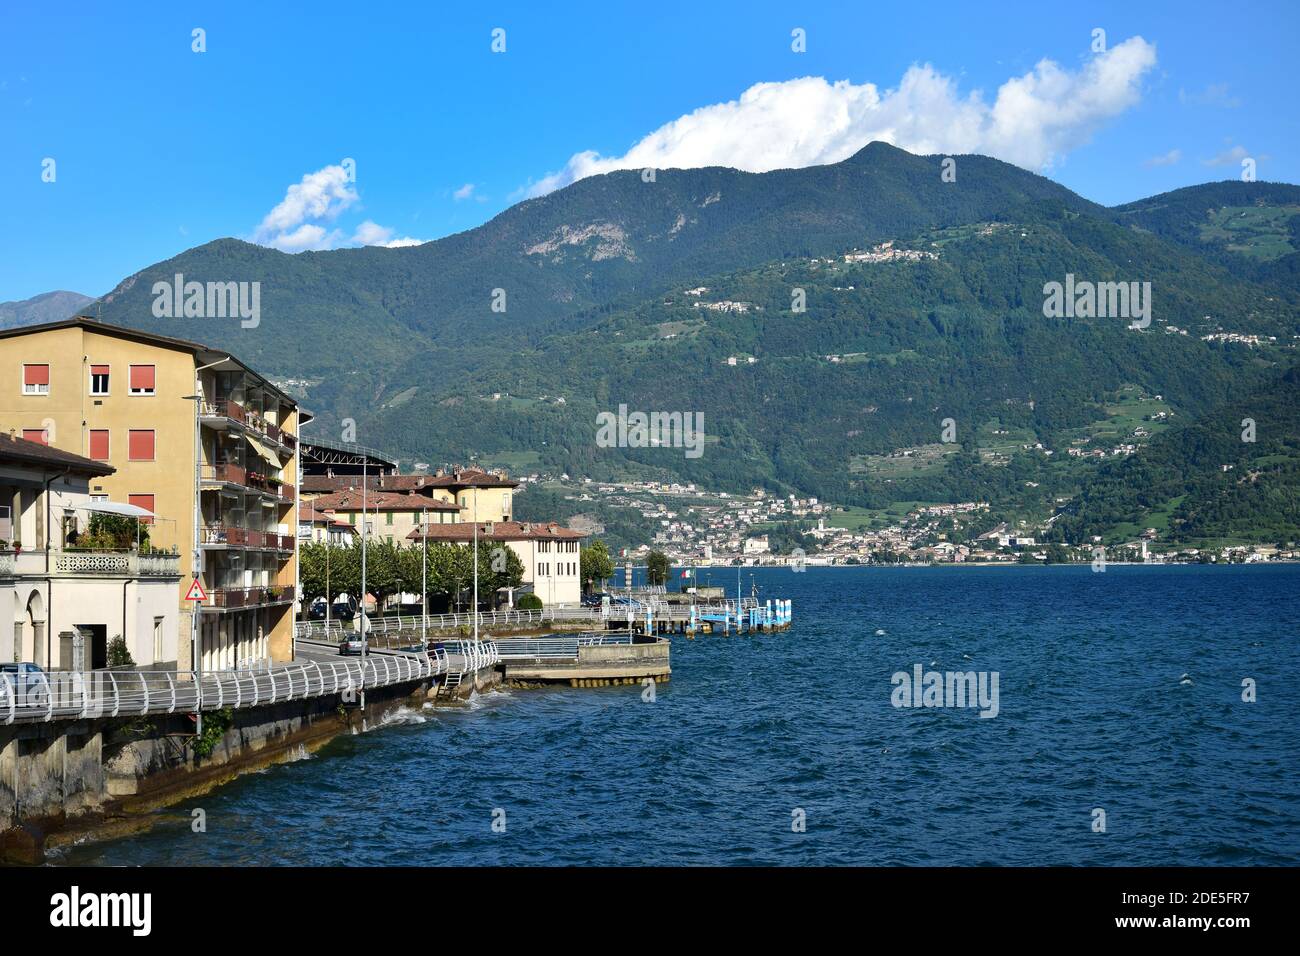 Un piccolo paese italiano con case e una strada lungo il lago. Montagne sull'altro lato del lago. Castro, Lago d'Iseo, Bergamo, Lombardia, Italia. Foto Stock